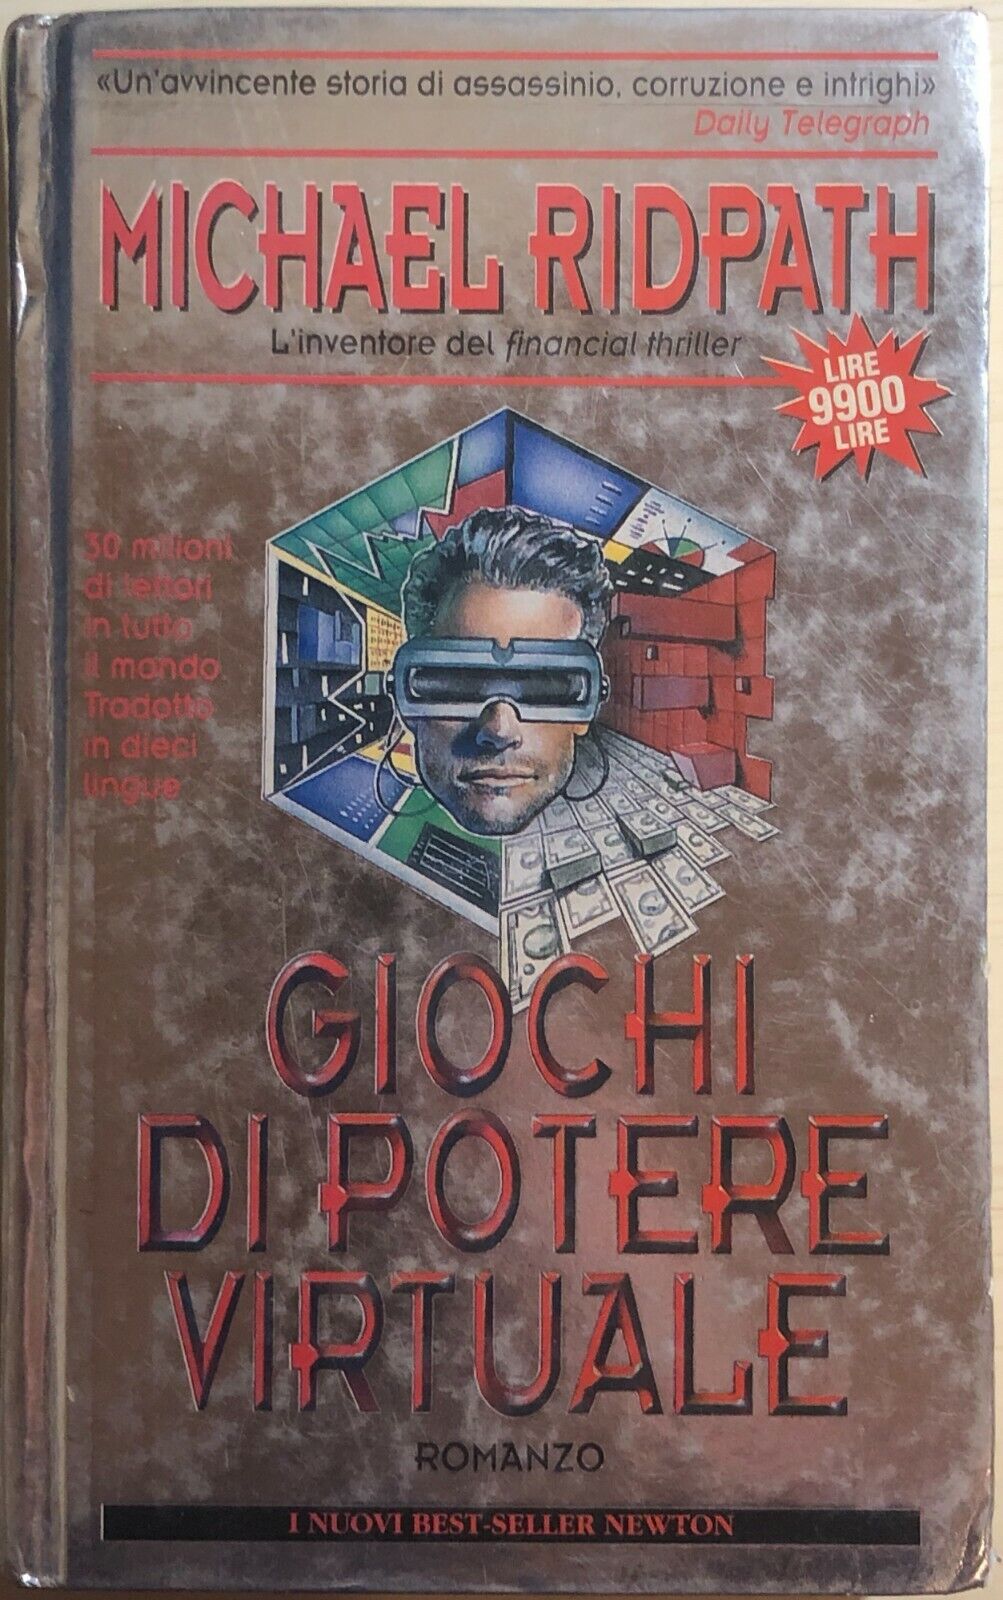 Giochi di potere virtuale di Michael Ridpath, 1996, Newton Compton Editori libro usato